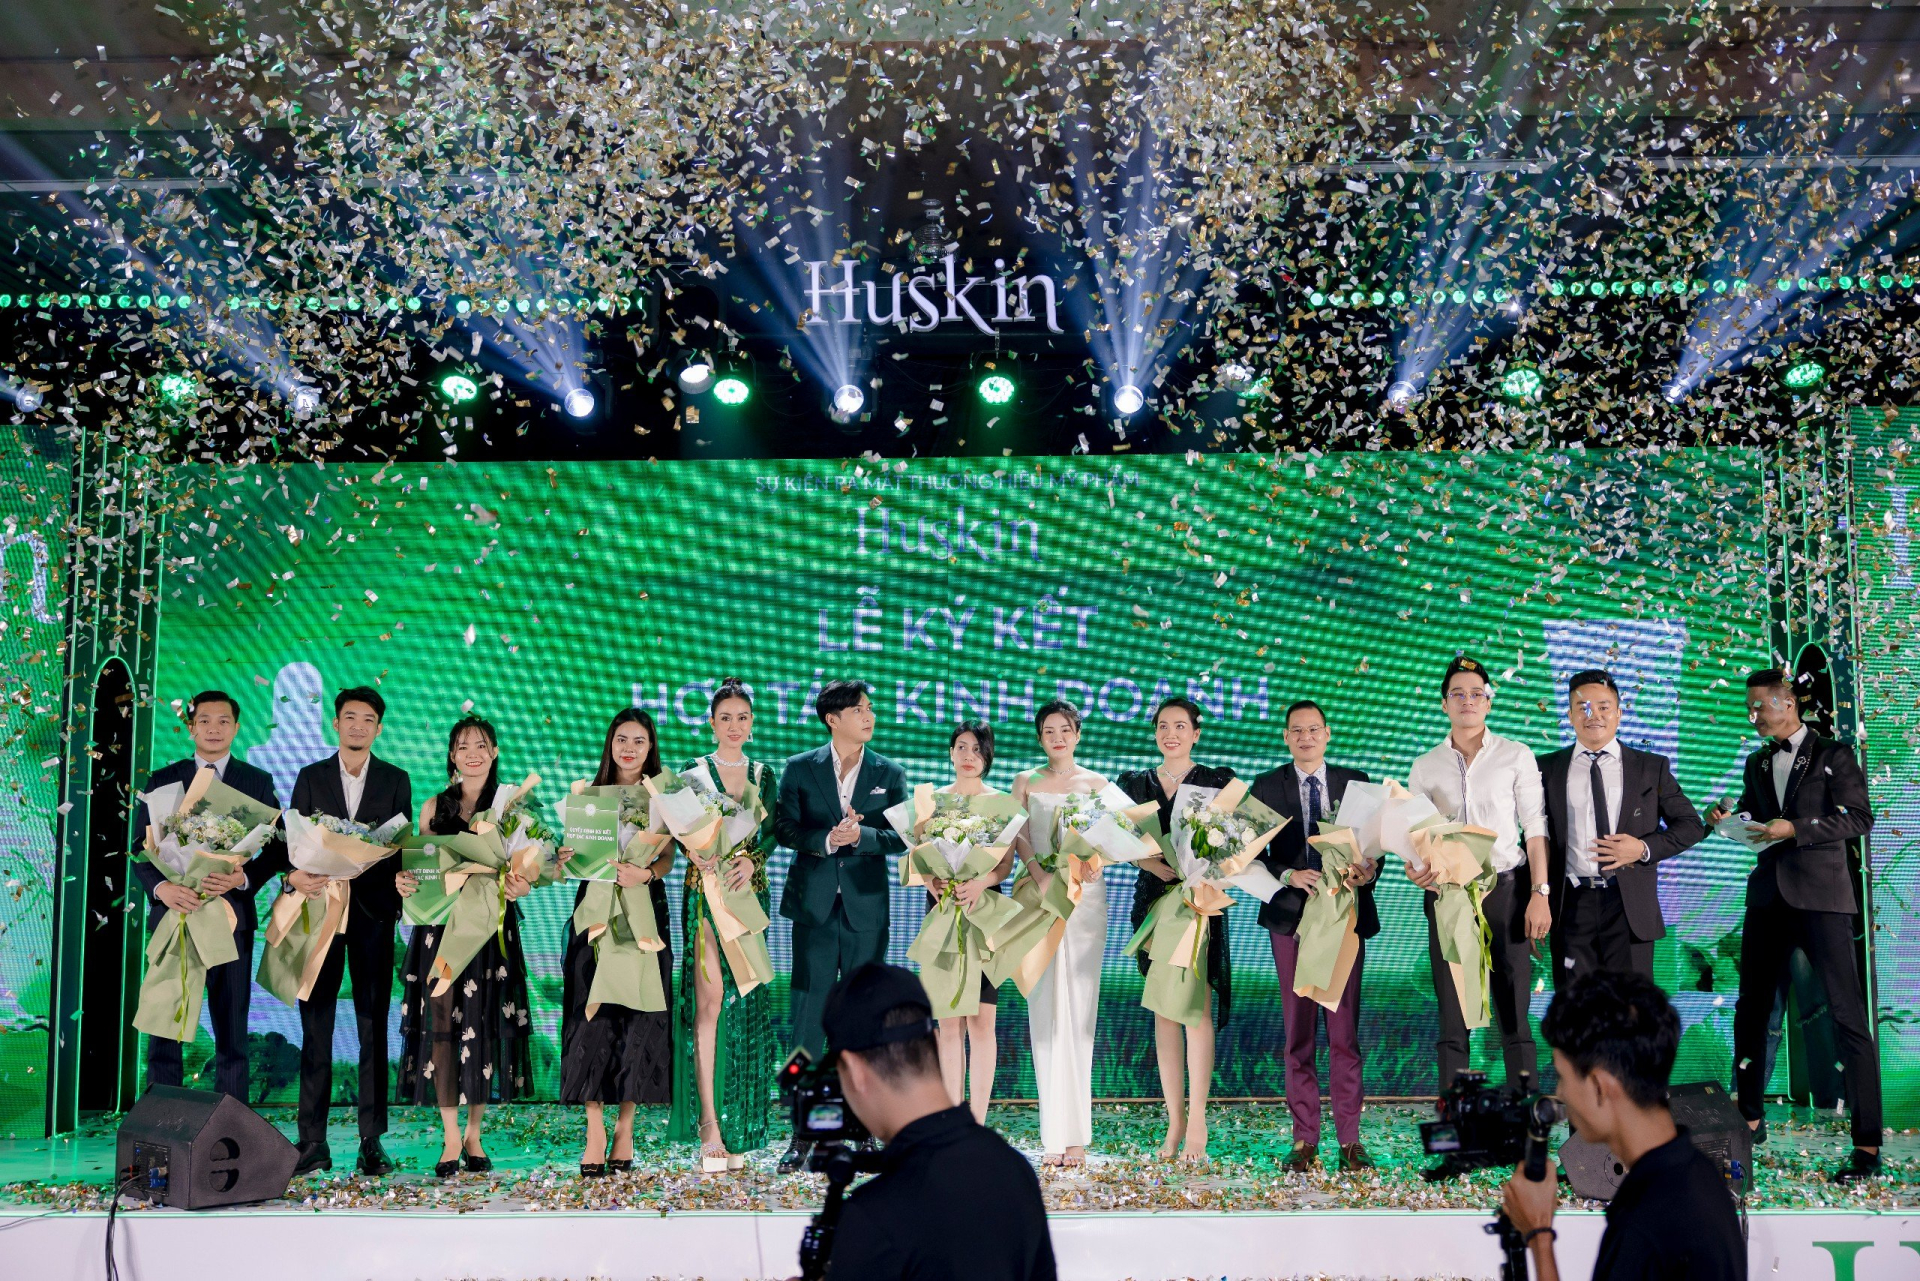 Vợ chồng Hồ Quang Hiếu ra mắt thương hiệu mỹ phẩm Huskin - ảnh 10